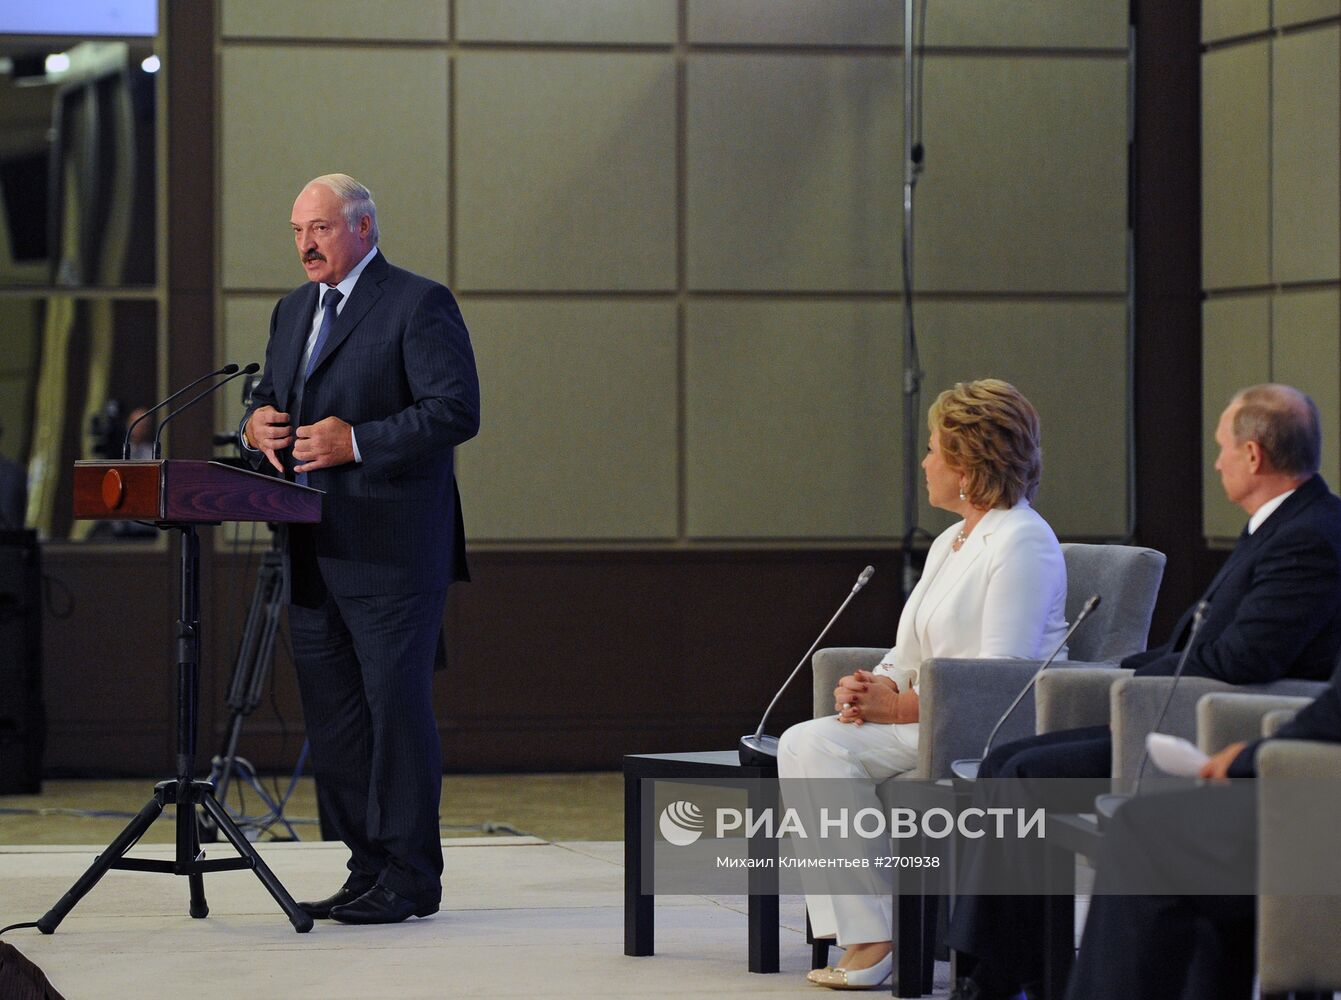 Президент РФ В.Путин и президент Белоруссии А.Лукашенко приняли участие во Втором форуме регионов России и Белоруссии